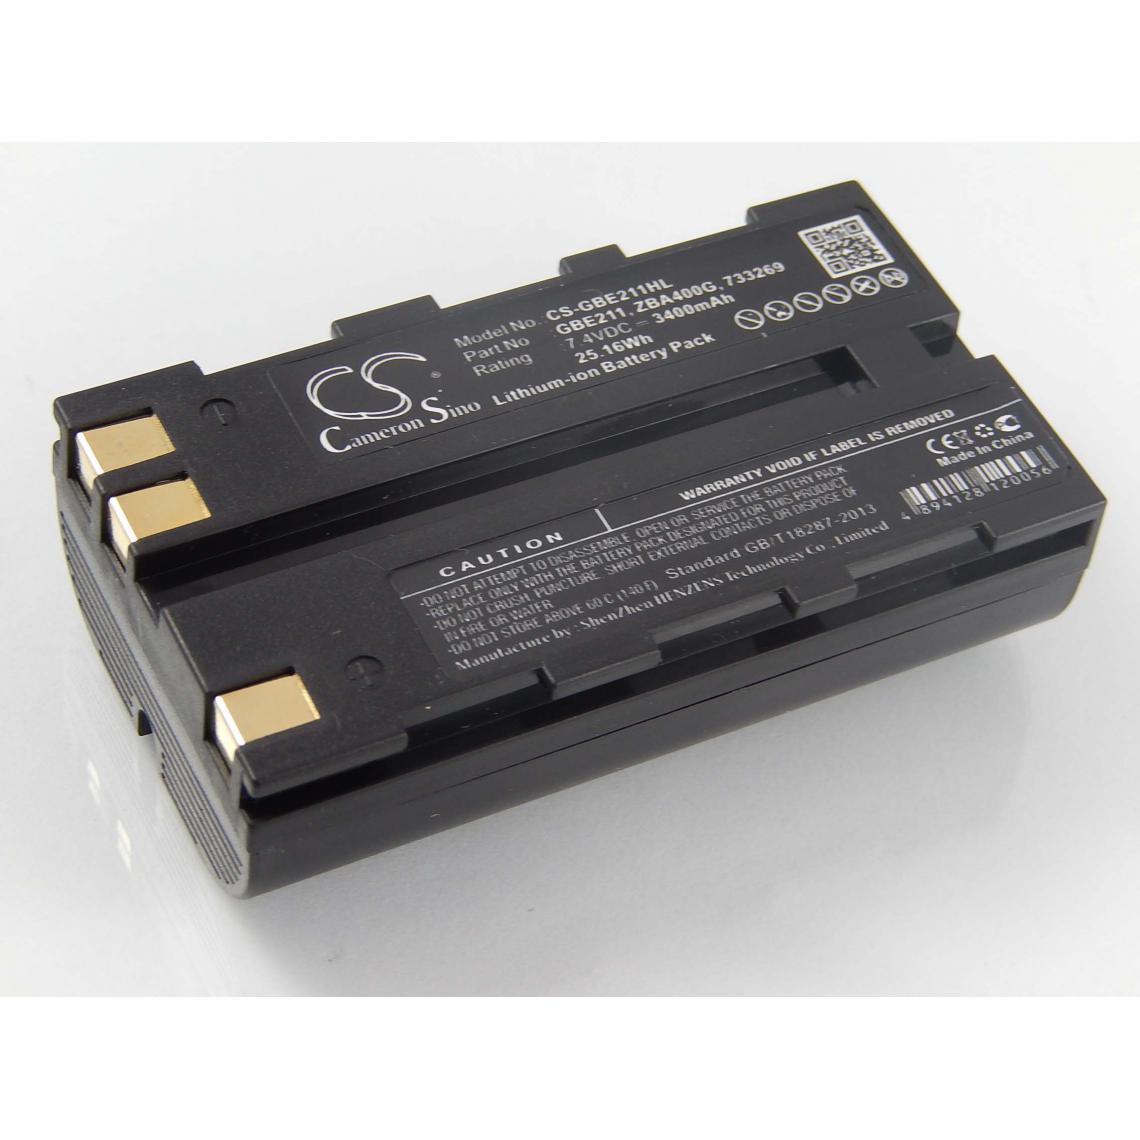 Vhbw - vhbw Batterie compatible avec Leica Viva GS08 plus NetRover dispositif de mesure laser, outil de mesure (3400mAh, 7,4V, Li-ion) - Piles rechargeables